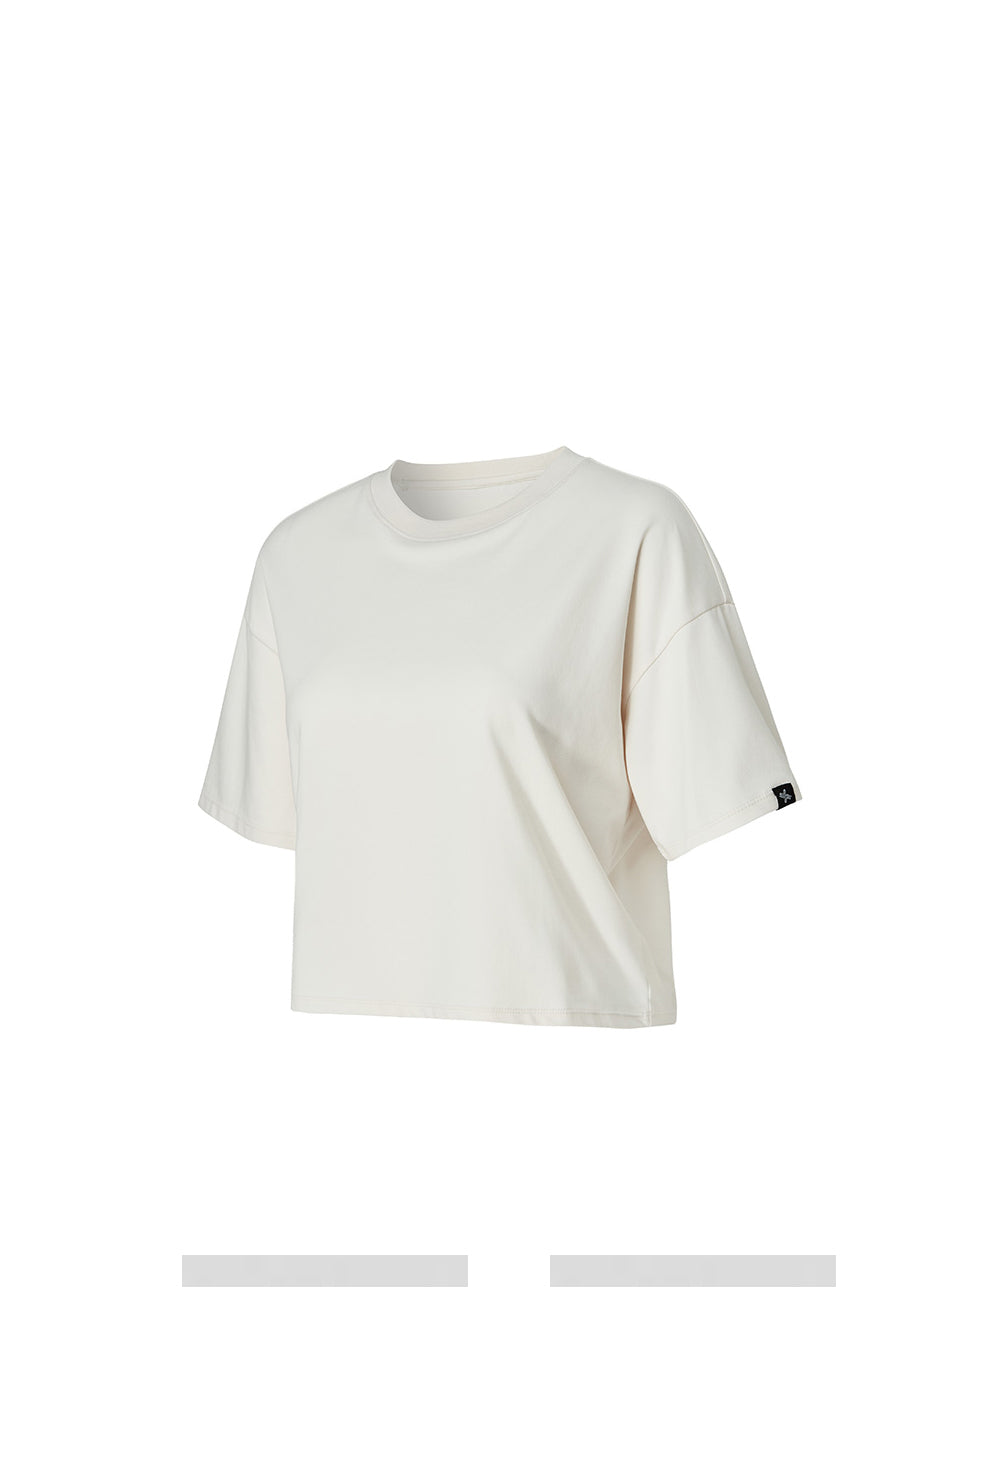 Cool Touch Basic Crop T-Shirt - Linen Cream (Clearance)